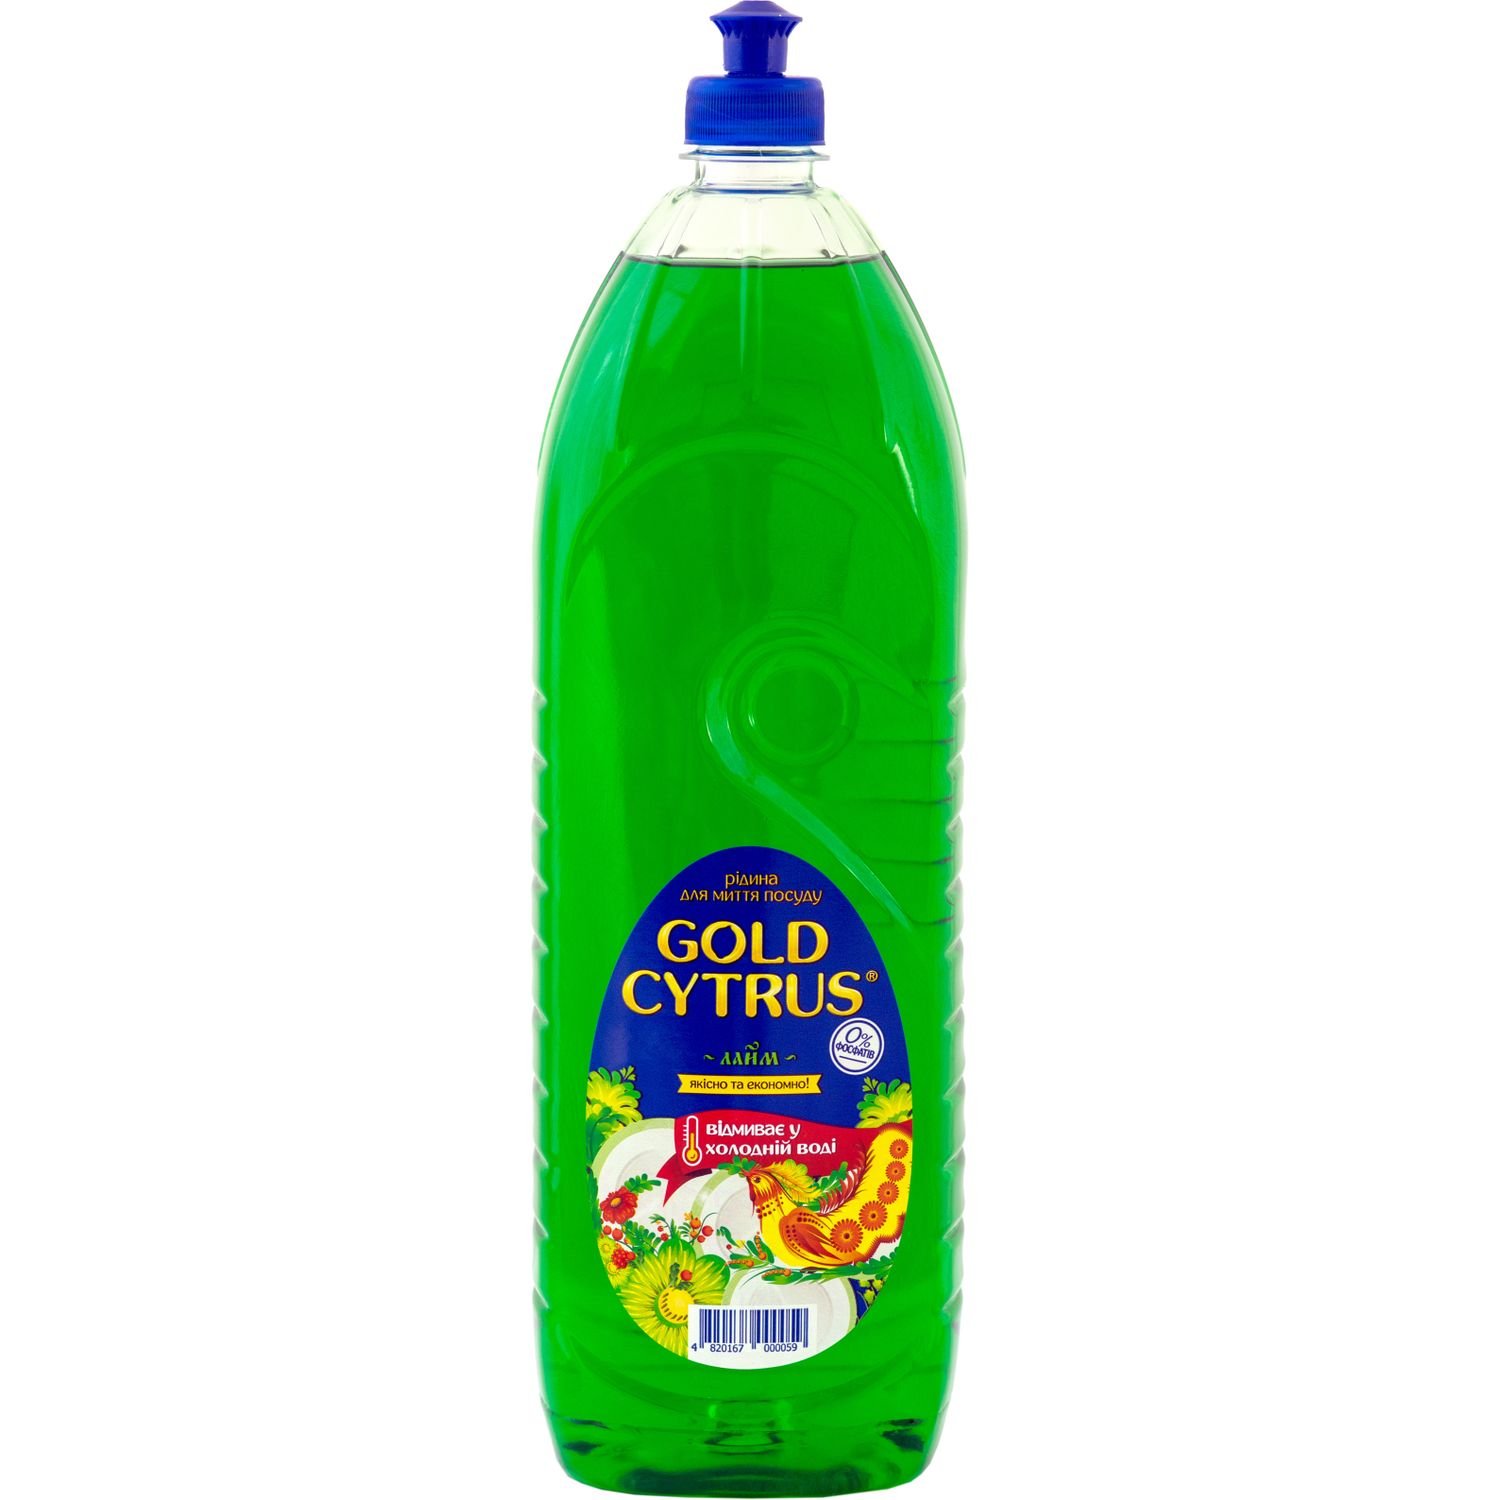 Жидкость для мытья посуды Gold Cytrus 1,5 л зеленая - фото 1